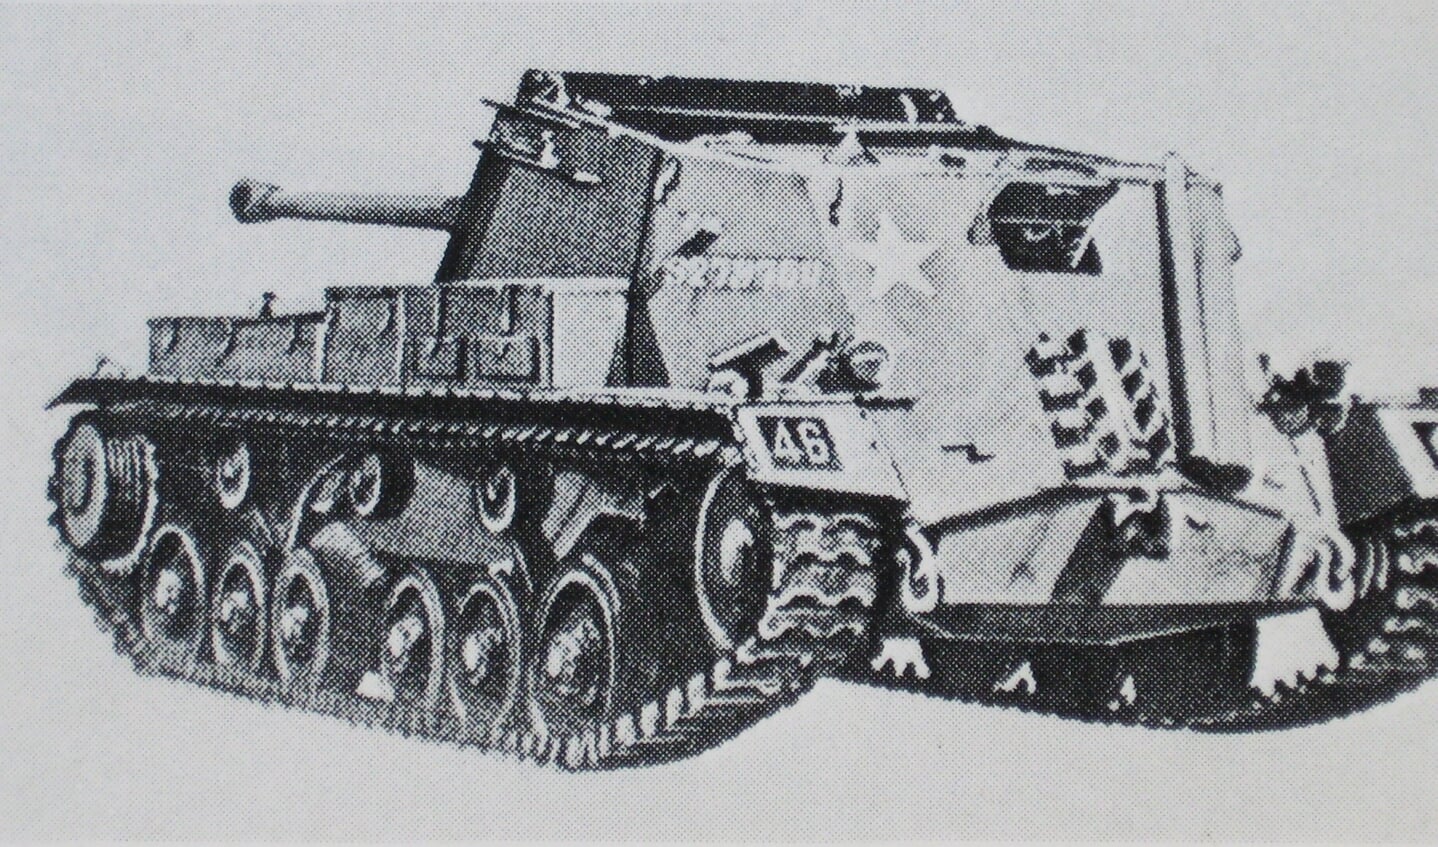 'Archer' SP-kanon op chassis Valentinetank. Achterstevoren aangebracht.